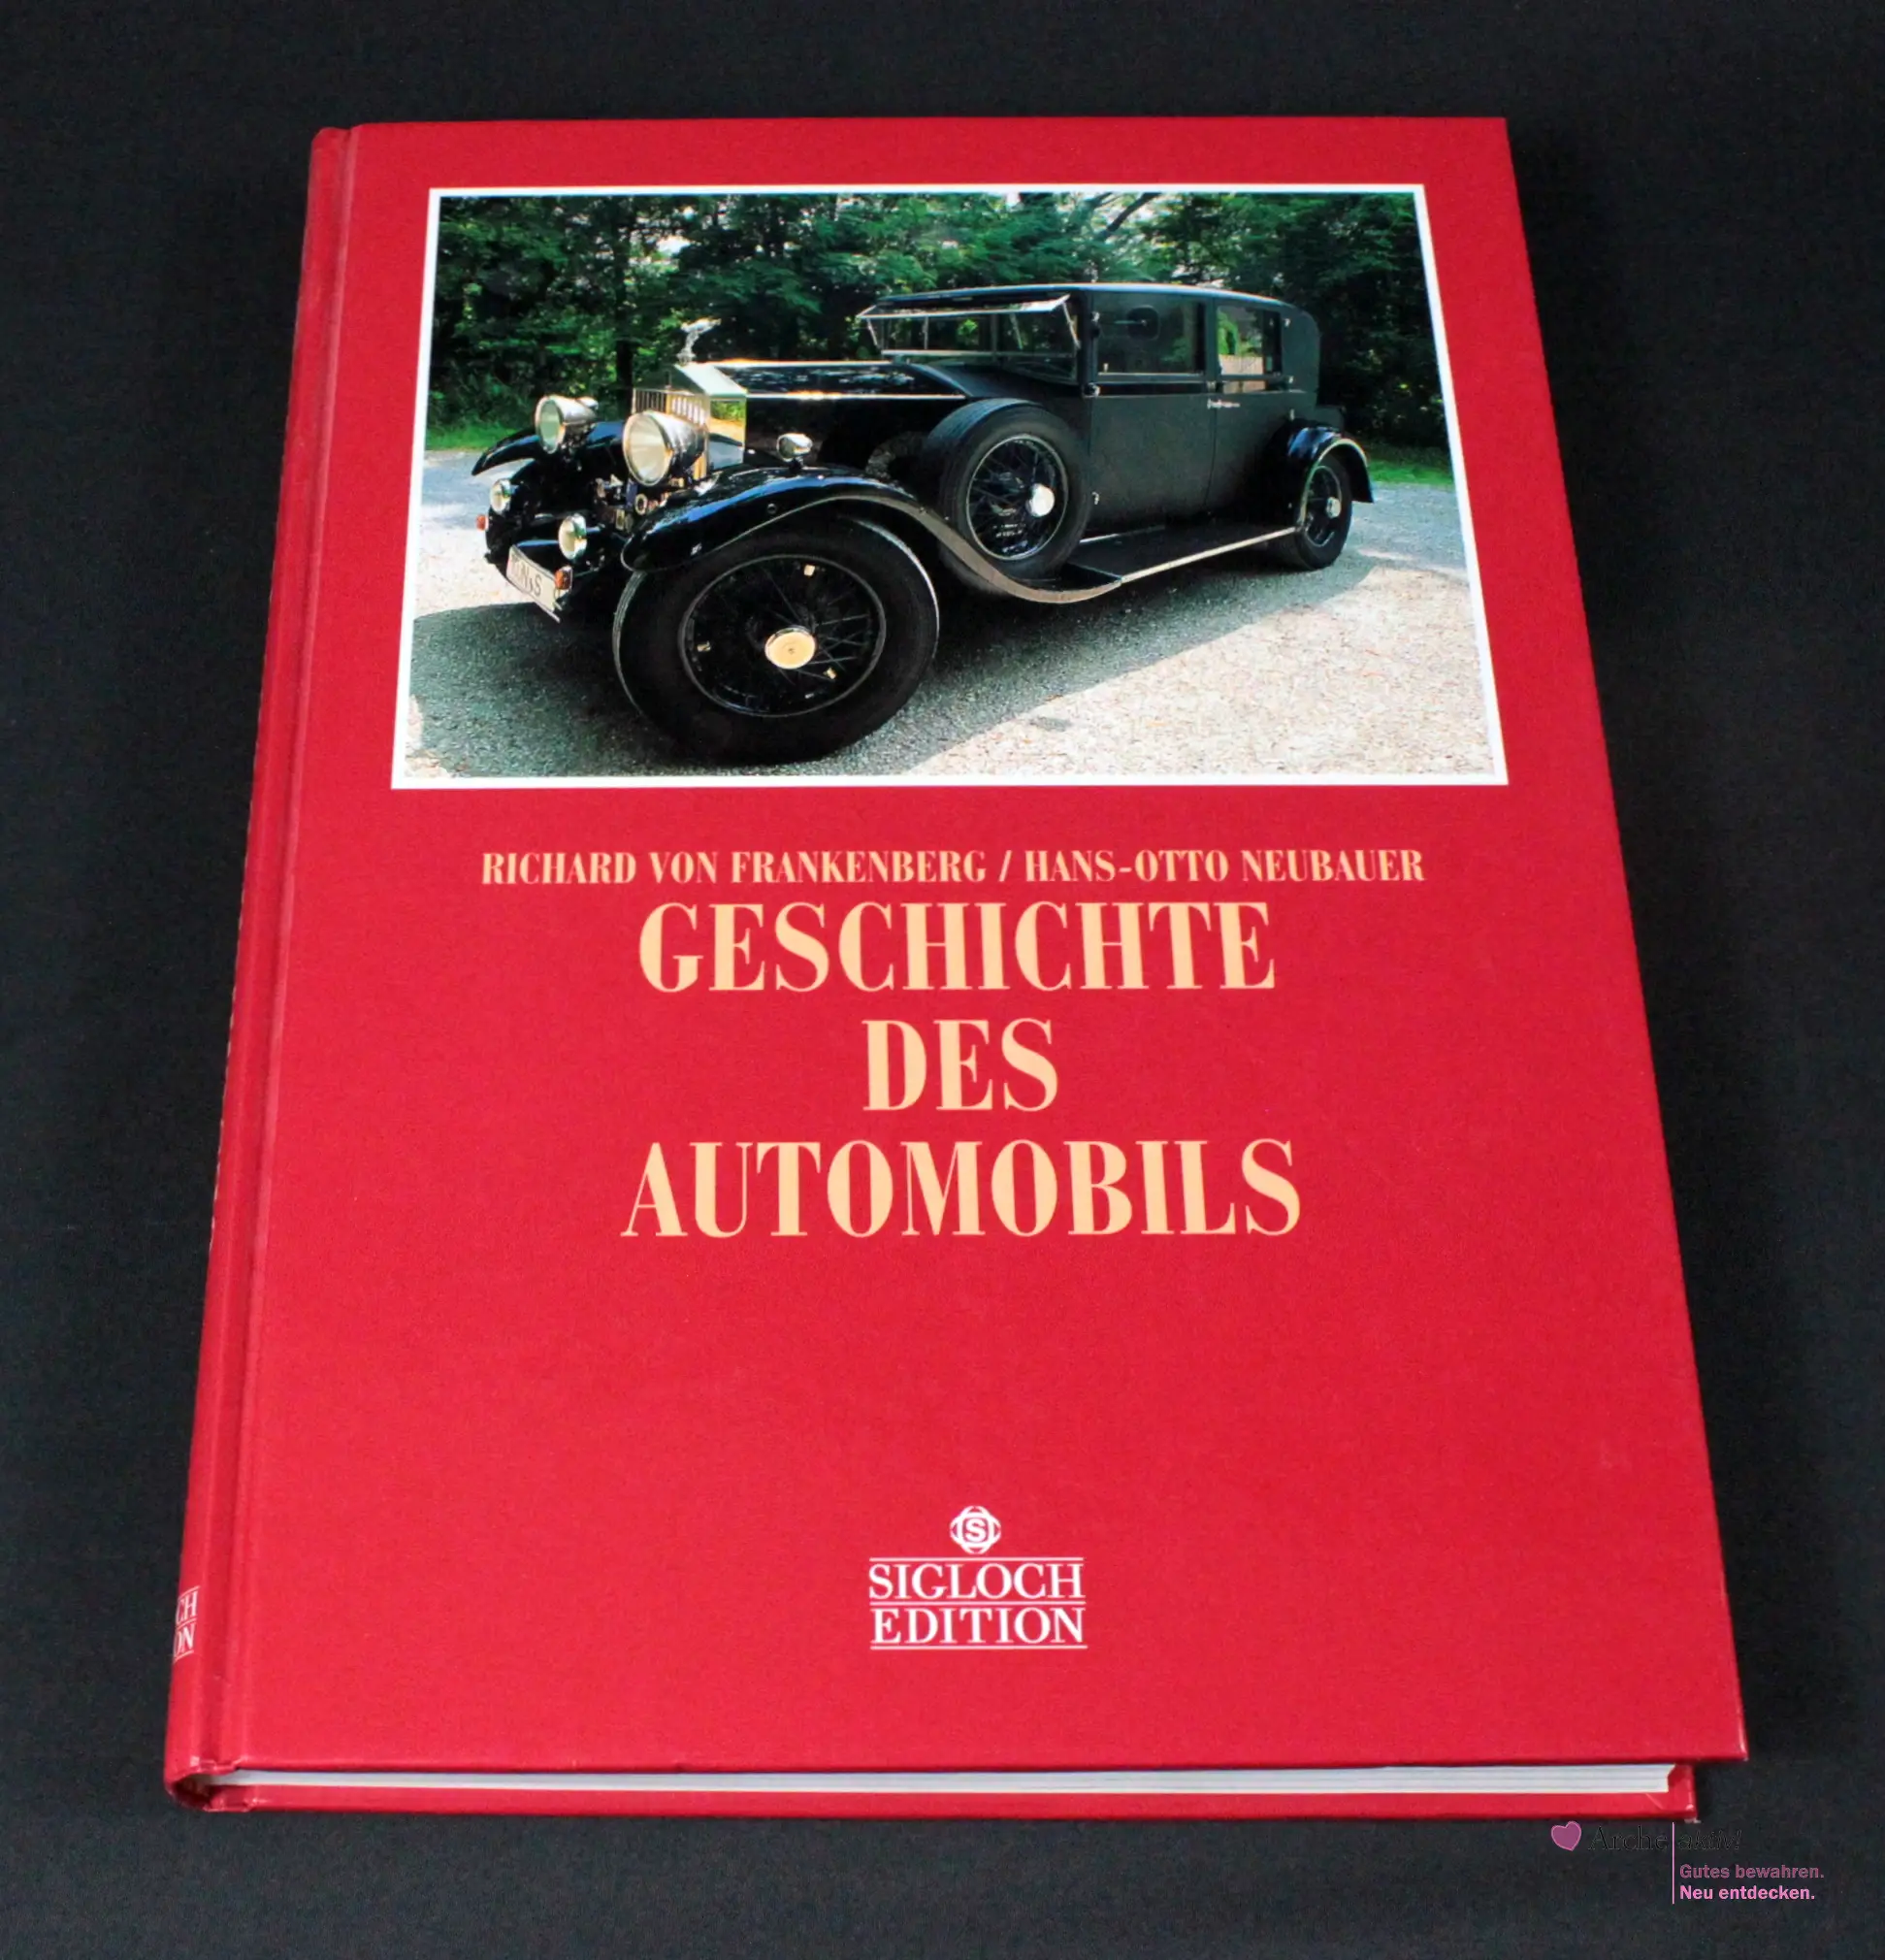 Geschichte des Automobils - Sigloch Edition, gebraucht